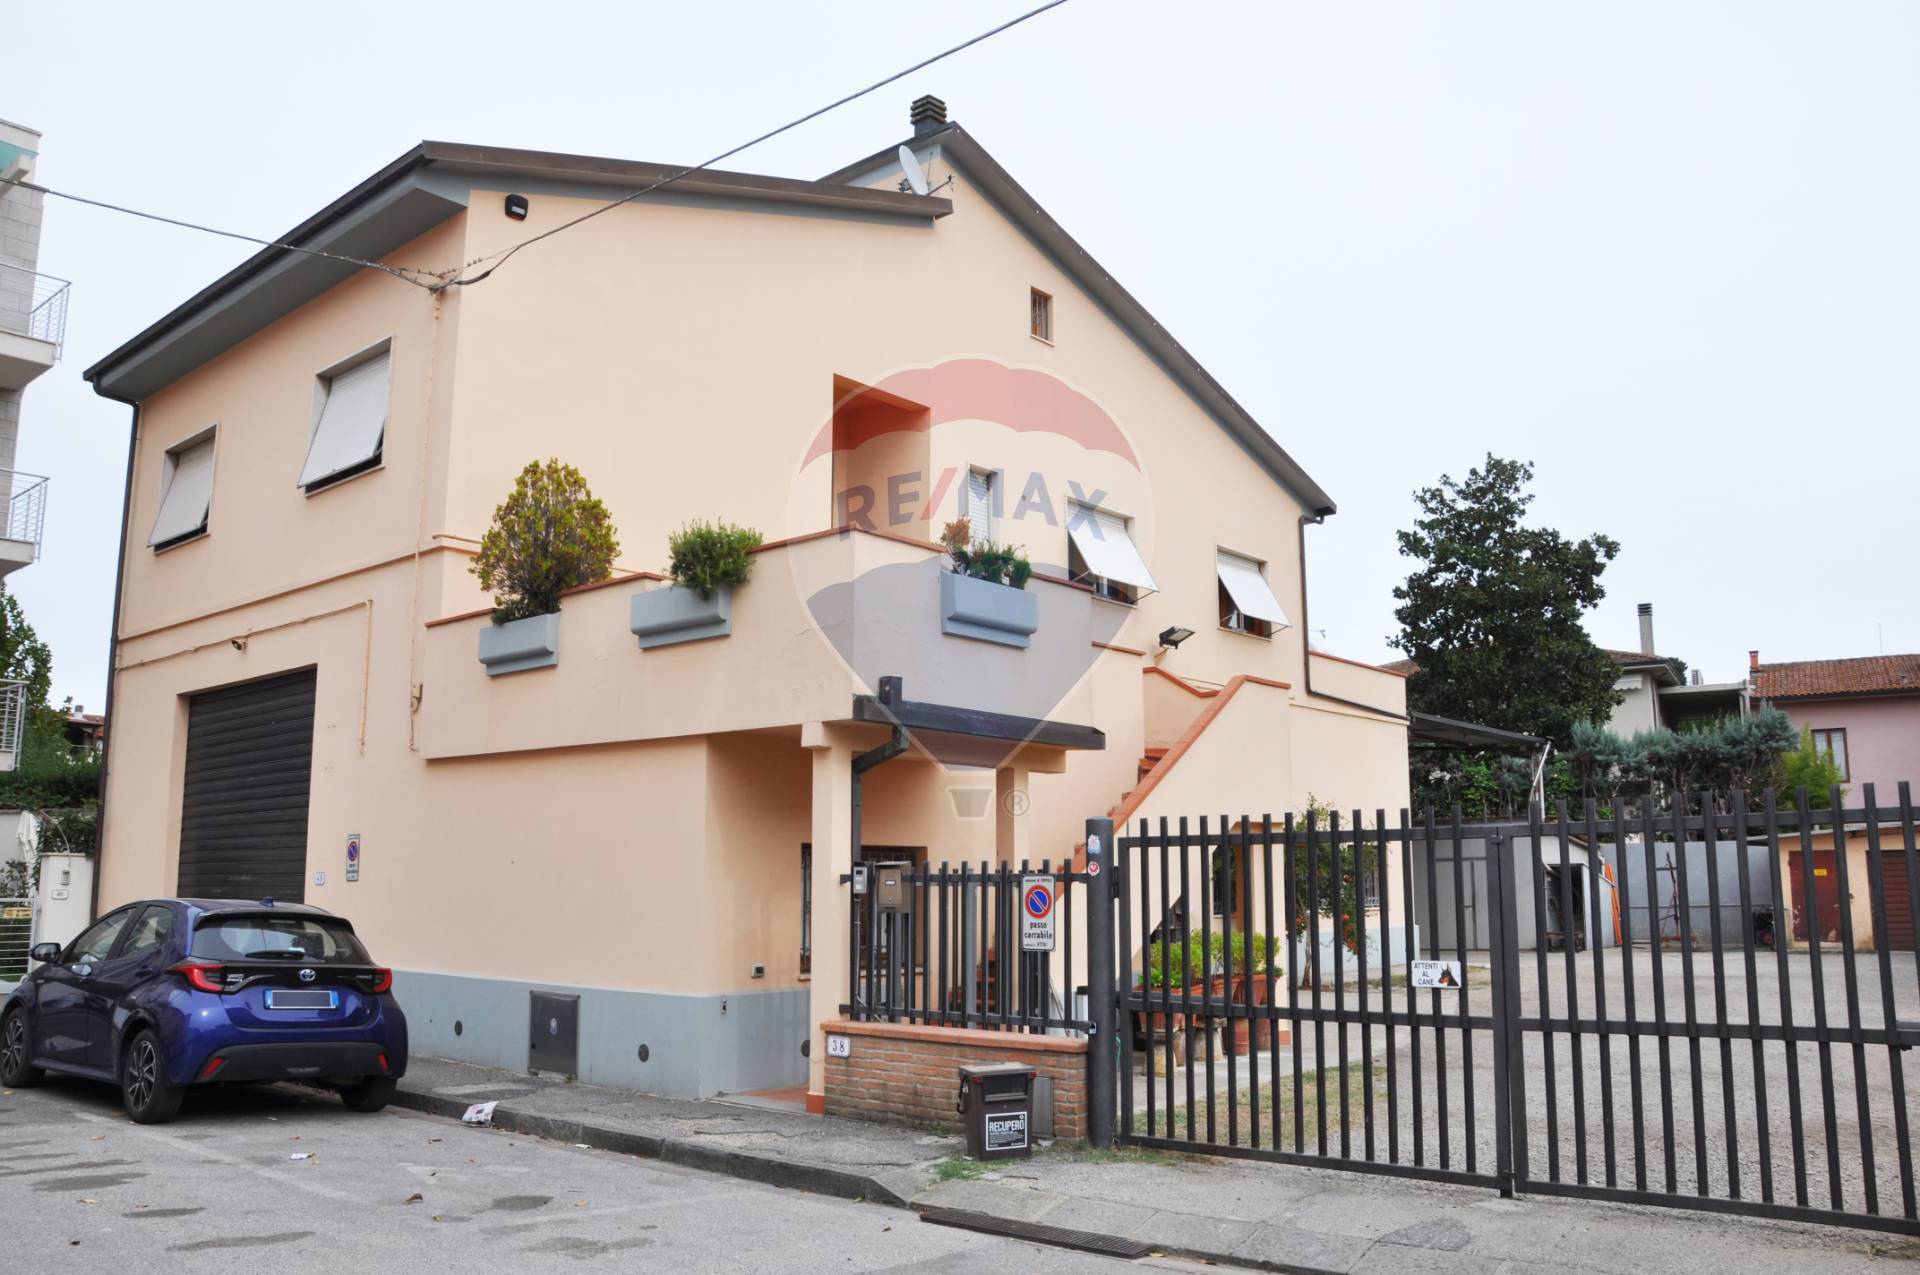 Soluzione Indipendente in vendita a Empoli, 5 locali, zona Località: Centro, prezzo € 460.000 | PortaleAgenzieImmobiliari.it